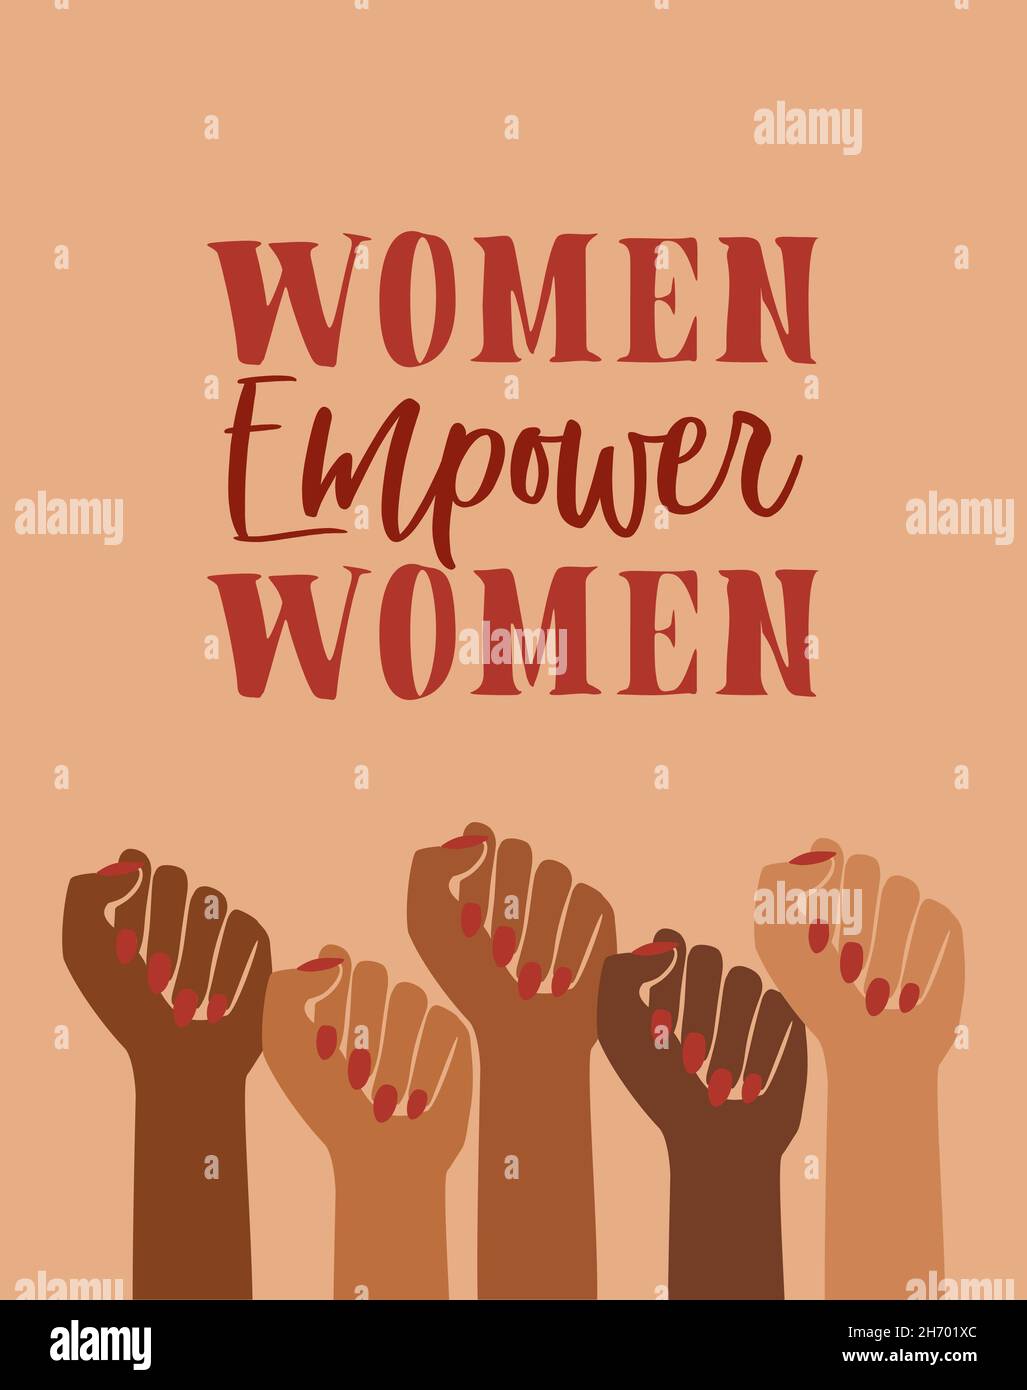 Frauen befähigen, weibliche Empowerment, braune Macht, feministisch, feministischer Stolz, Hände mit der Faust angehoben, Retro-Grafikdesign, Geschlechtergleichstellung Thema starke Frauen, Stockfoto